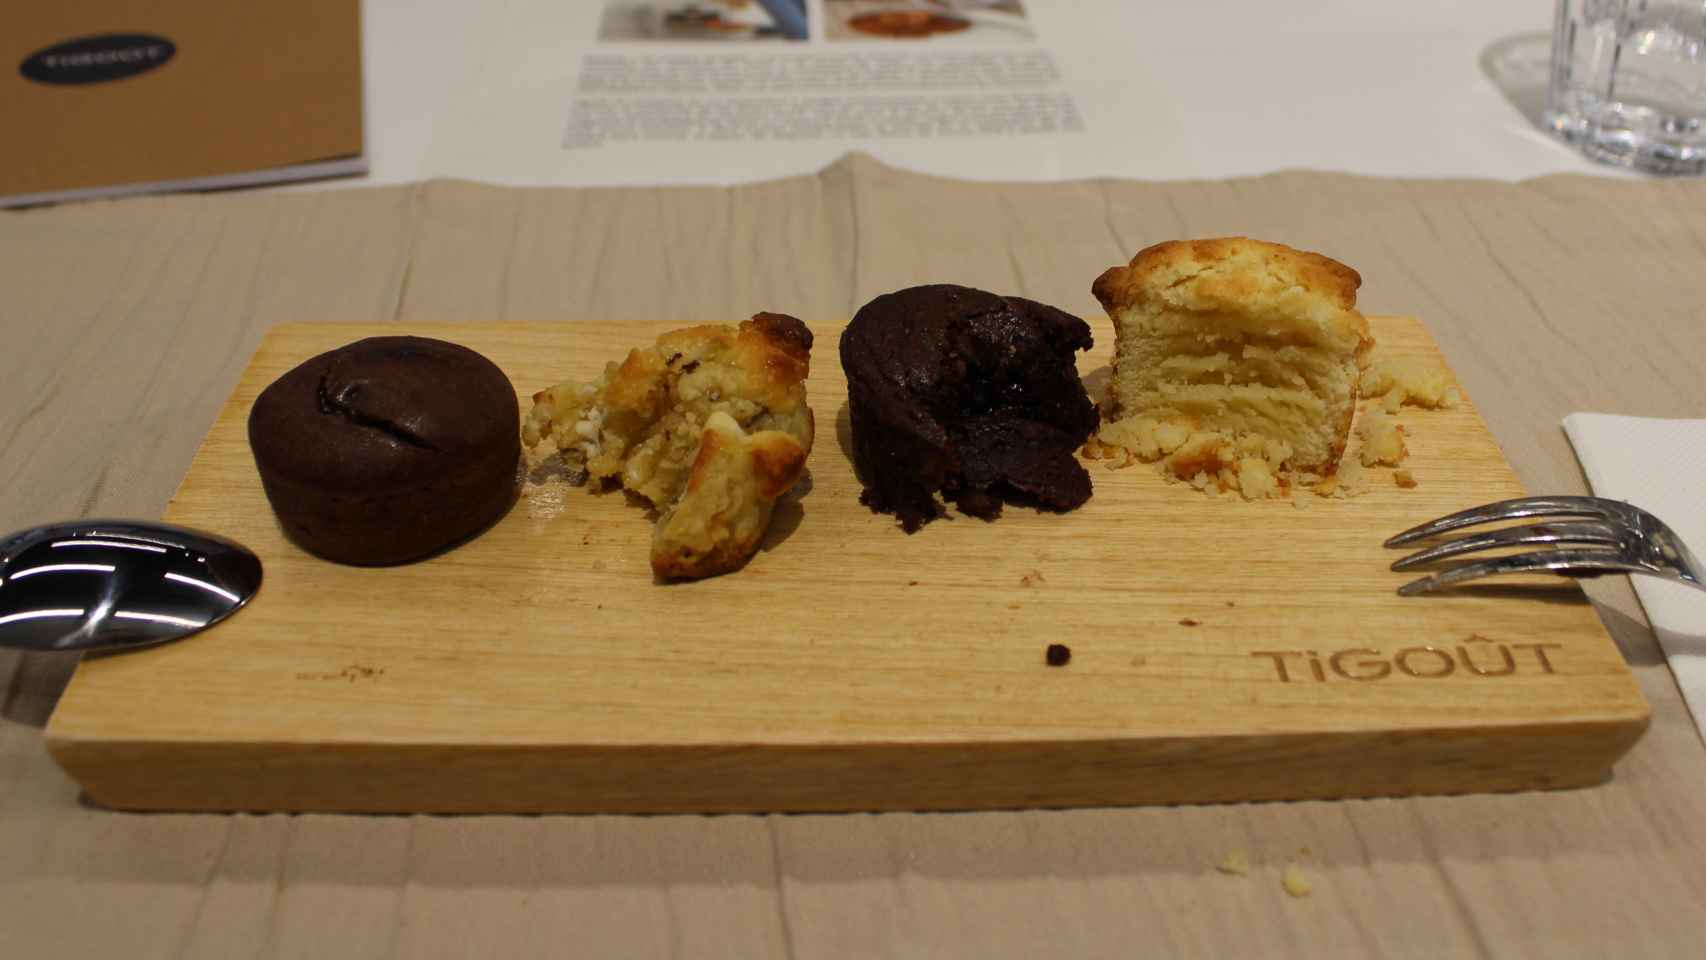 Cuatro pasteles recién hechos por Tigoût probados durante la cata.